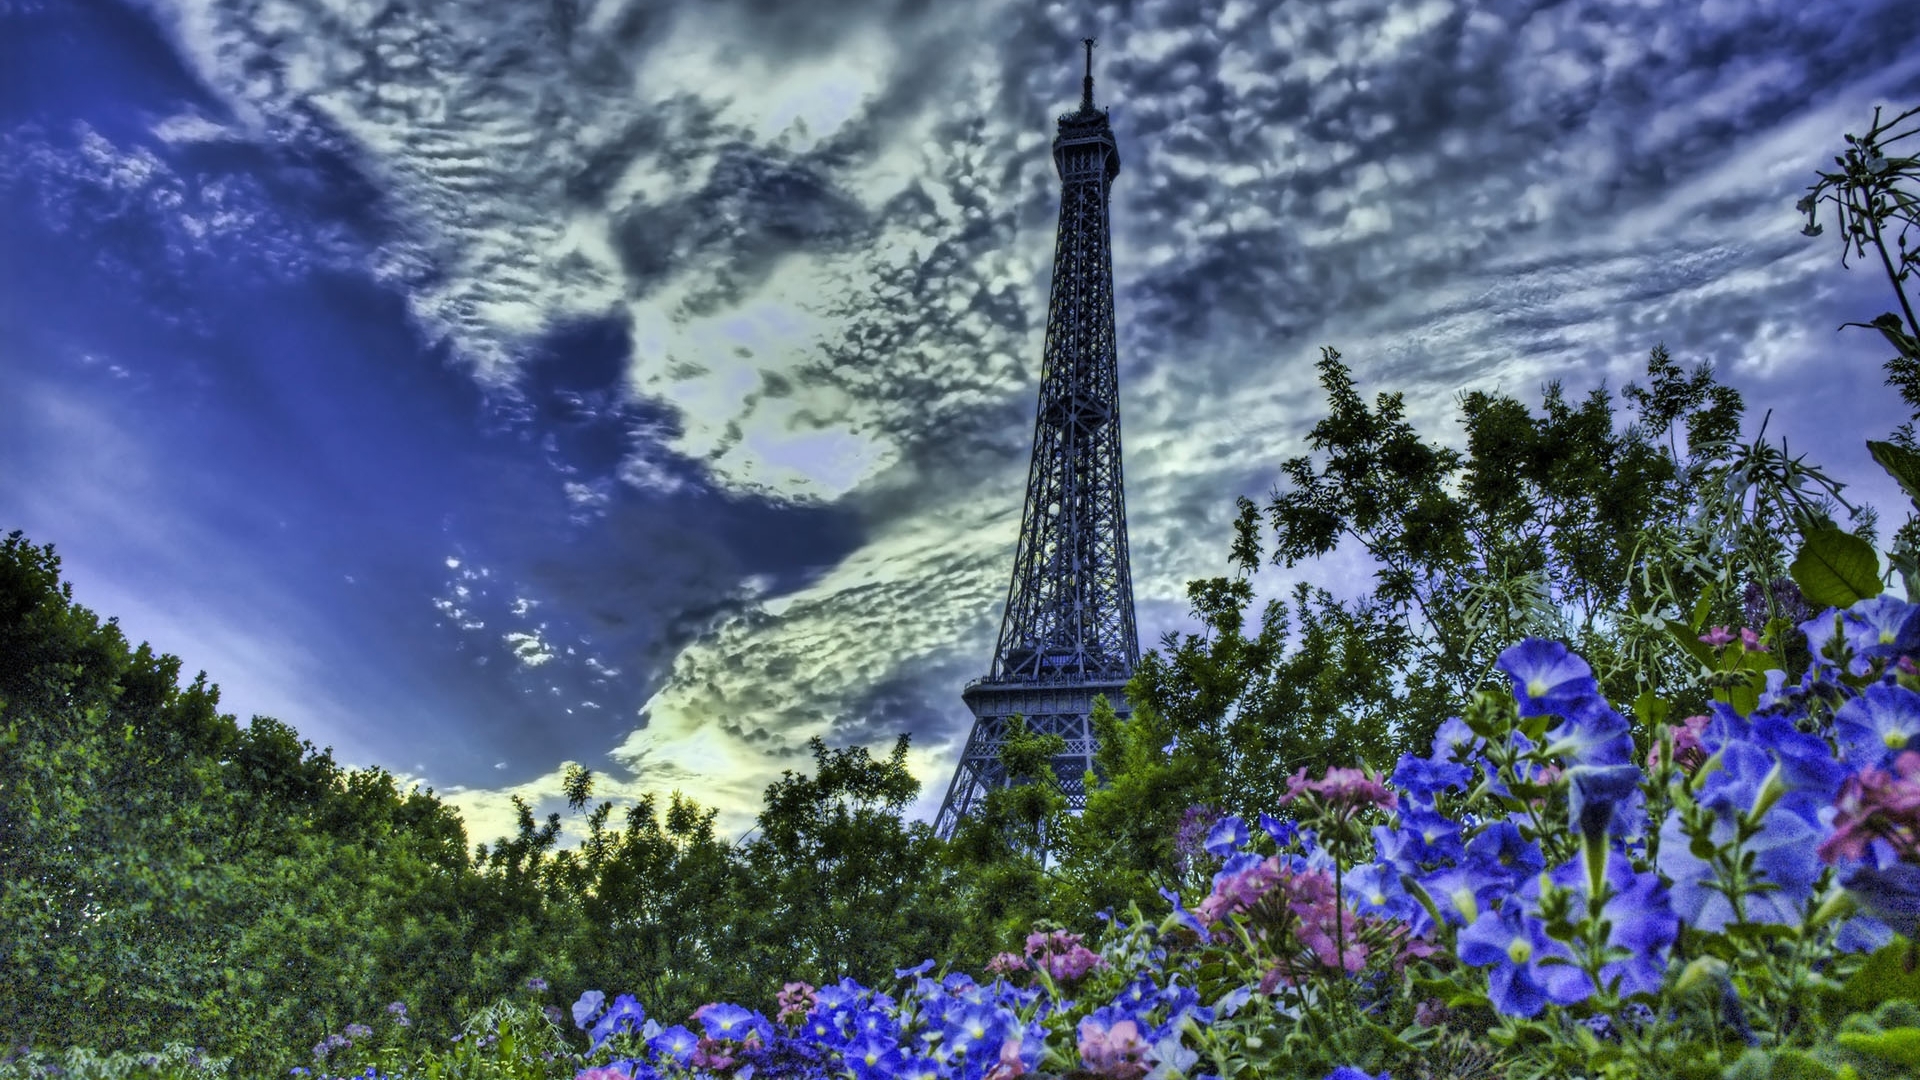 Wallpapers sky flowers Eiffel Tower on the desktop